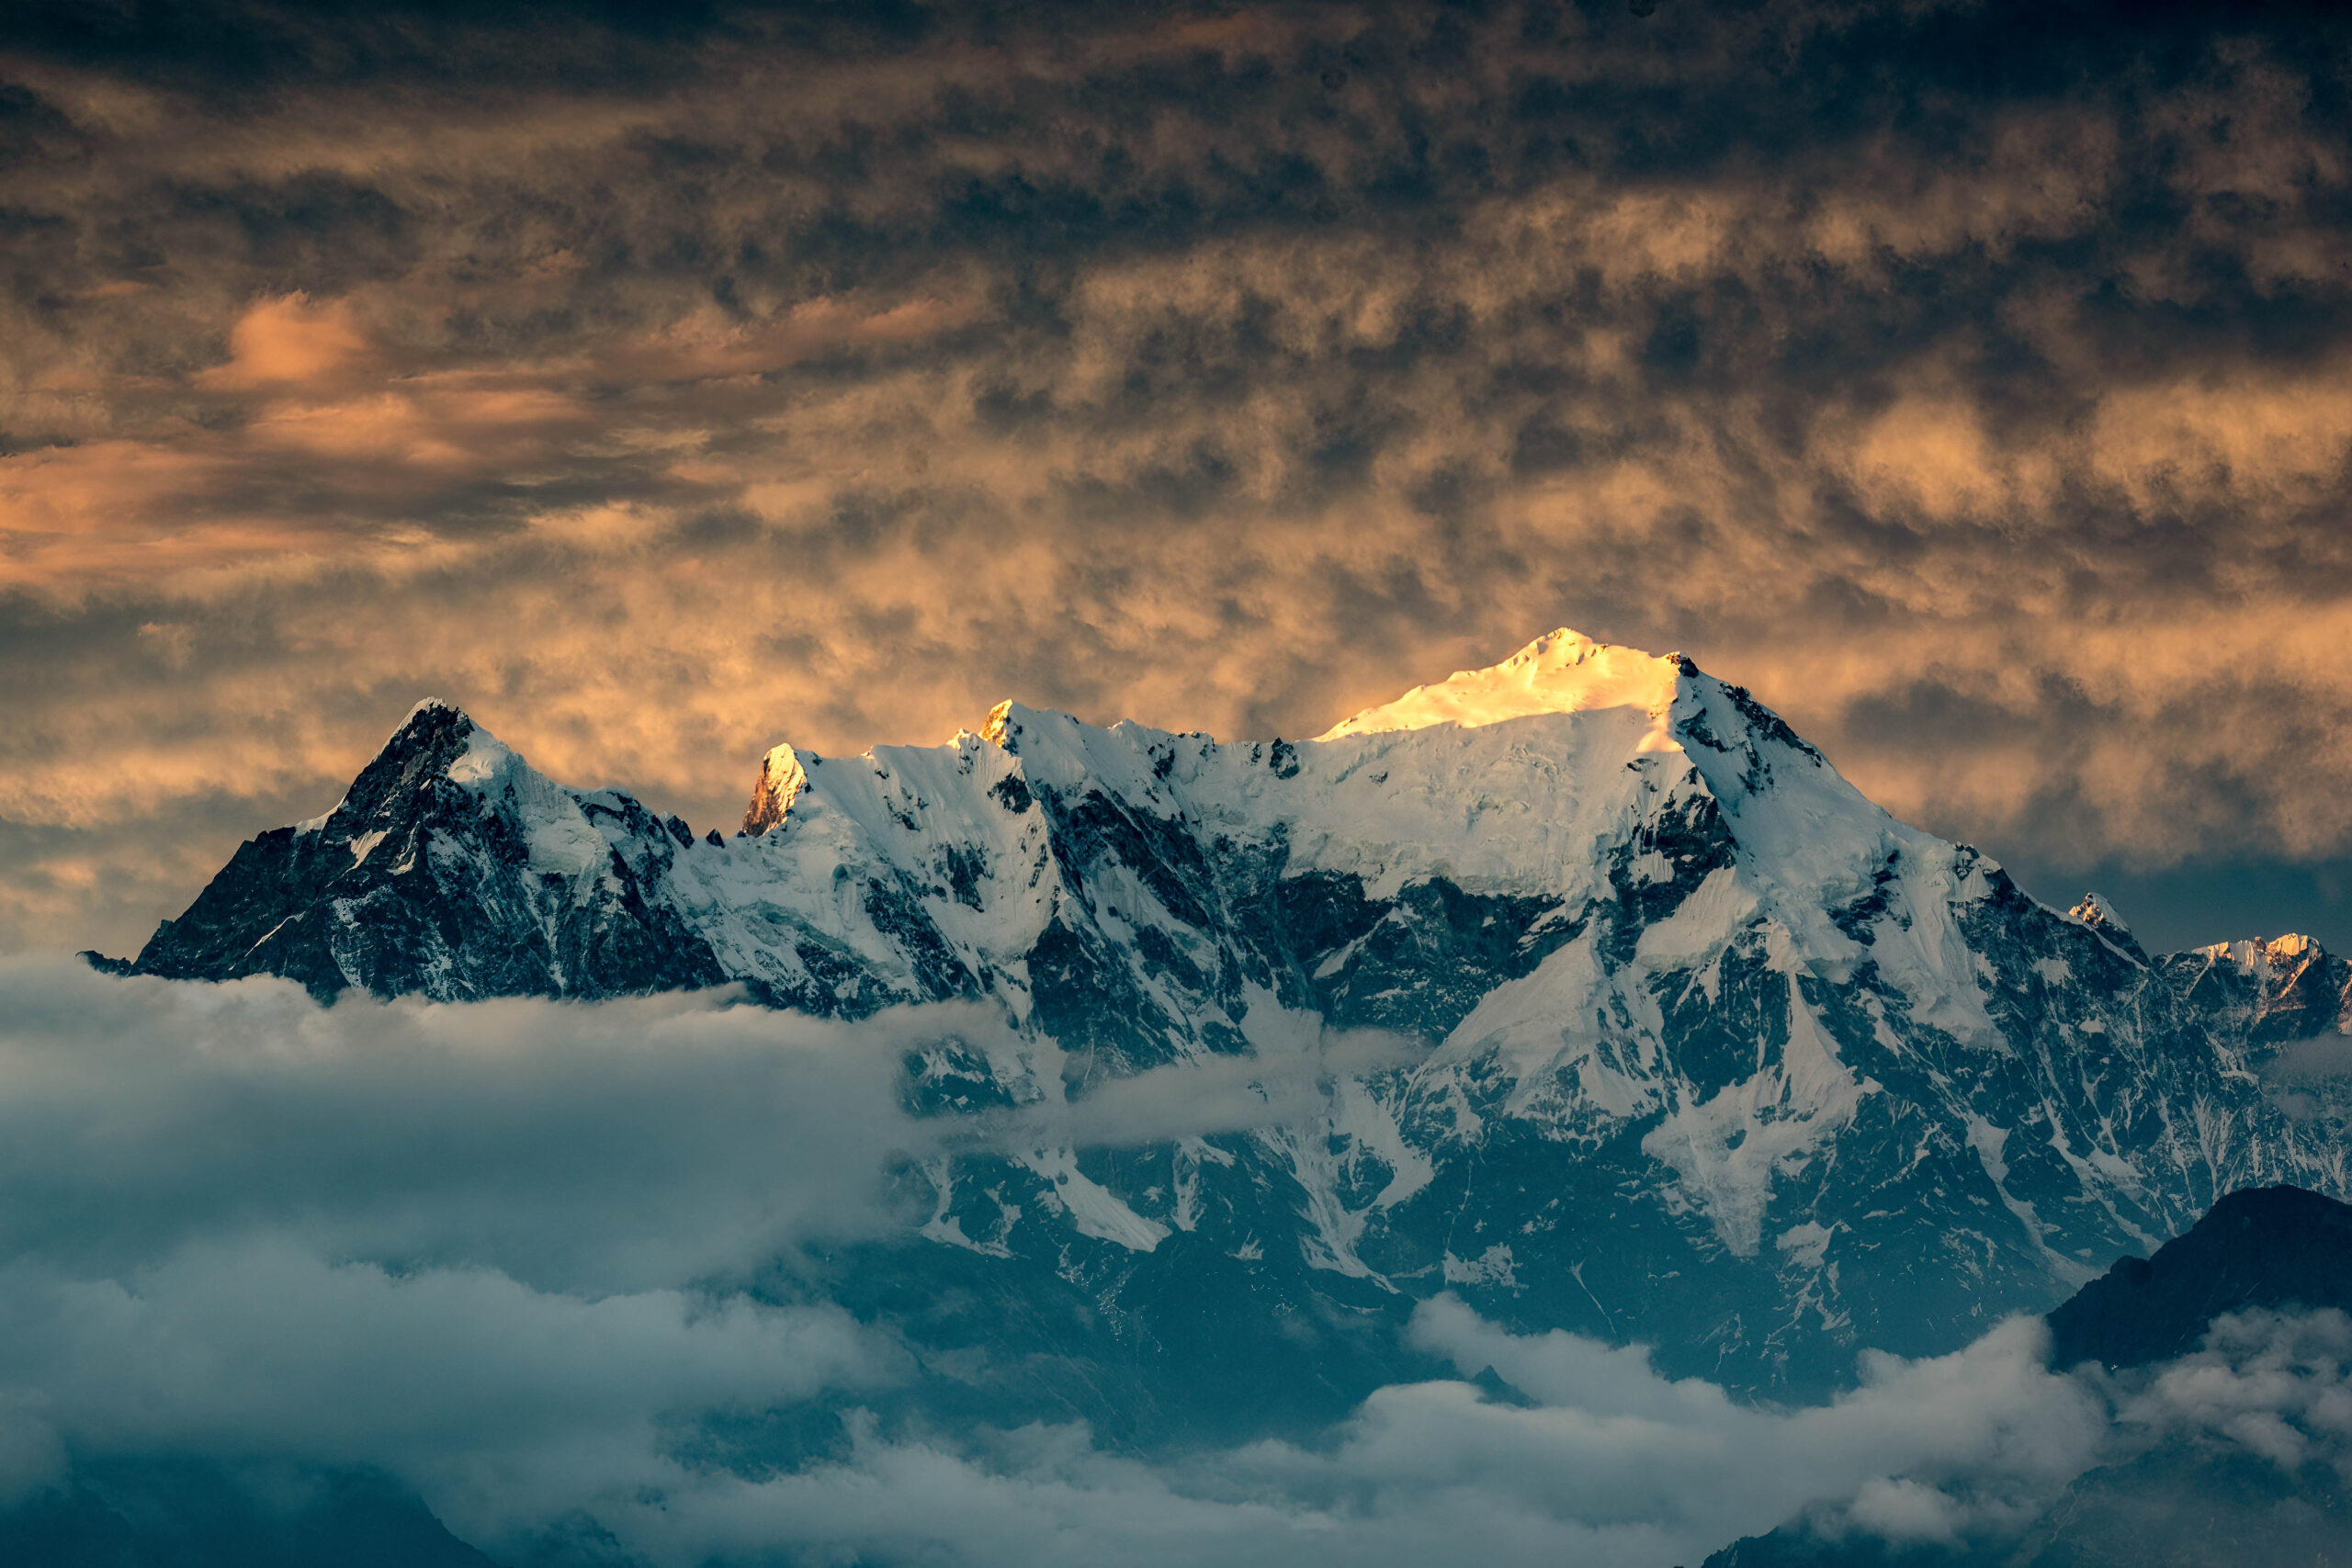 Mount Langtang Lirung, as viewed from the Laurebina Mountain Pass, under fluffy golden clouds